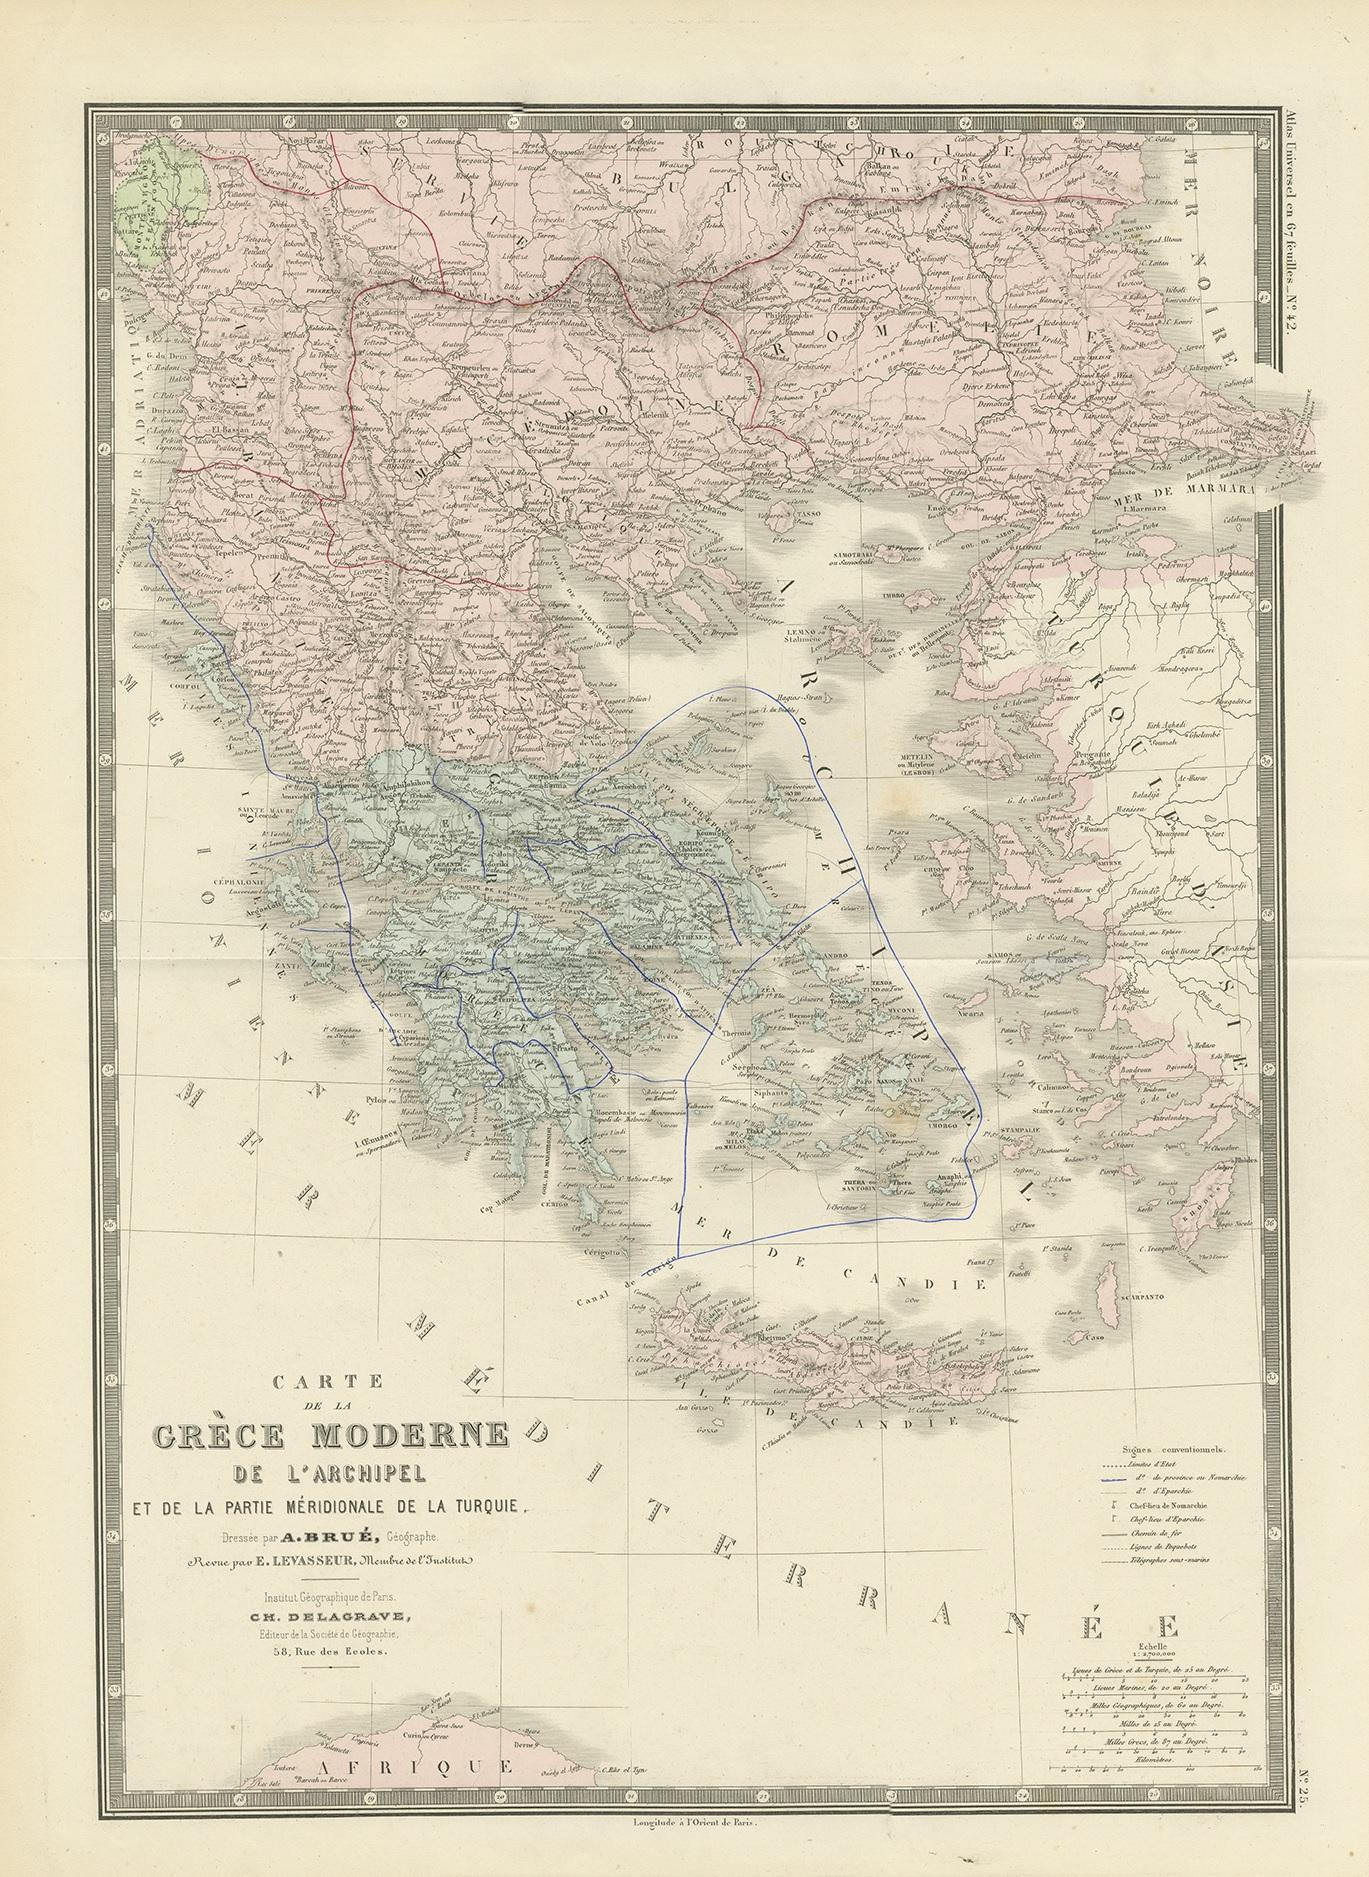 Antique map titled 'Carte de la Grèce Modernde de l'Archipel'. Large map of Greece. This map originates from 'Atlas de Géographie Moderne Physique et Politique' by A. Levasseur. Published 1875.